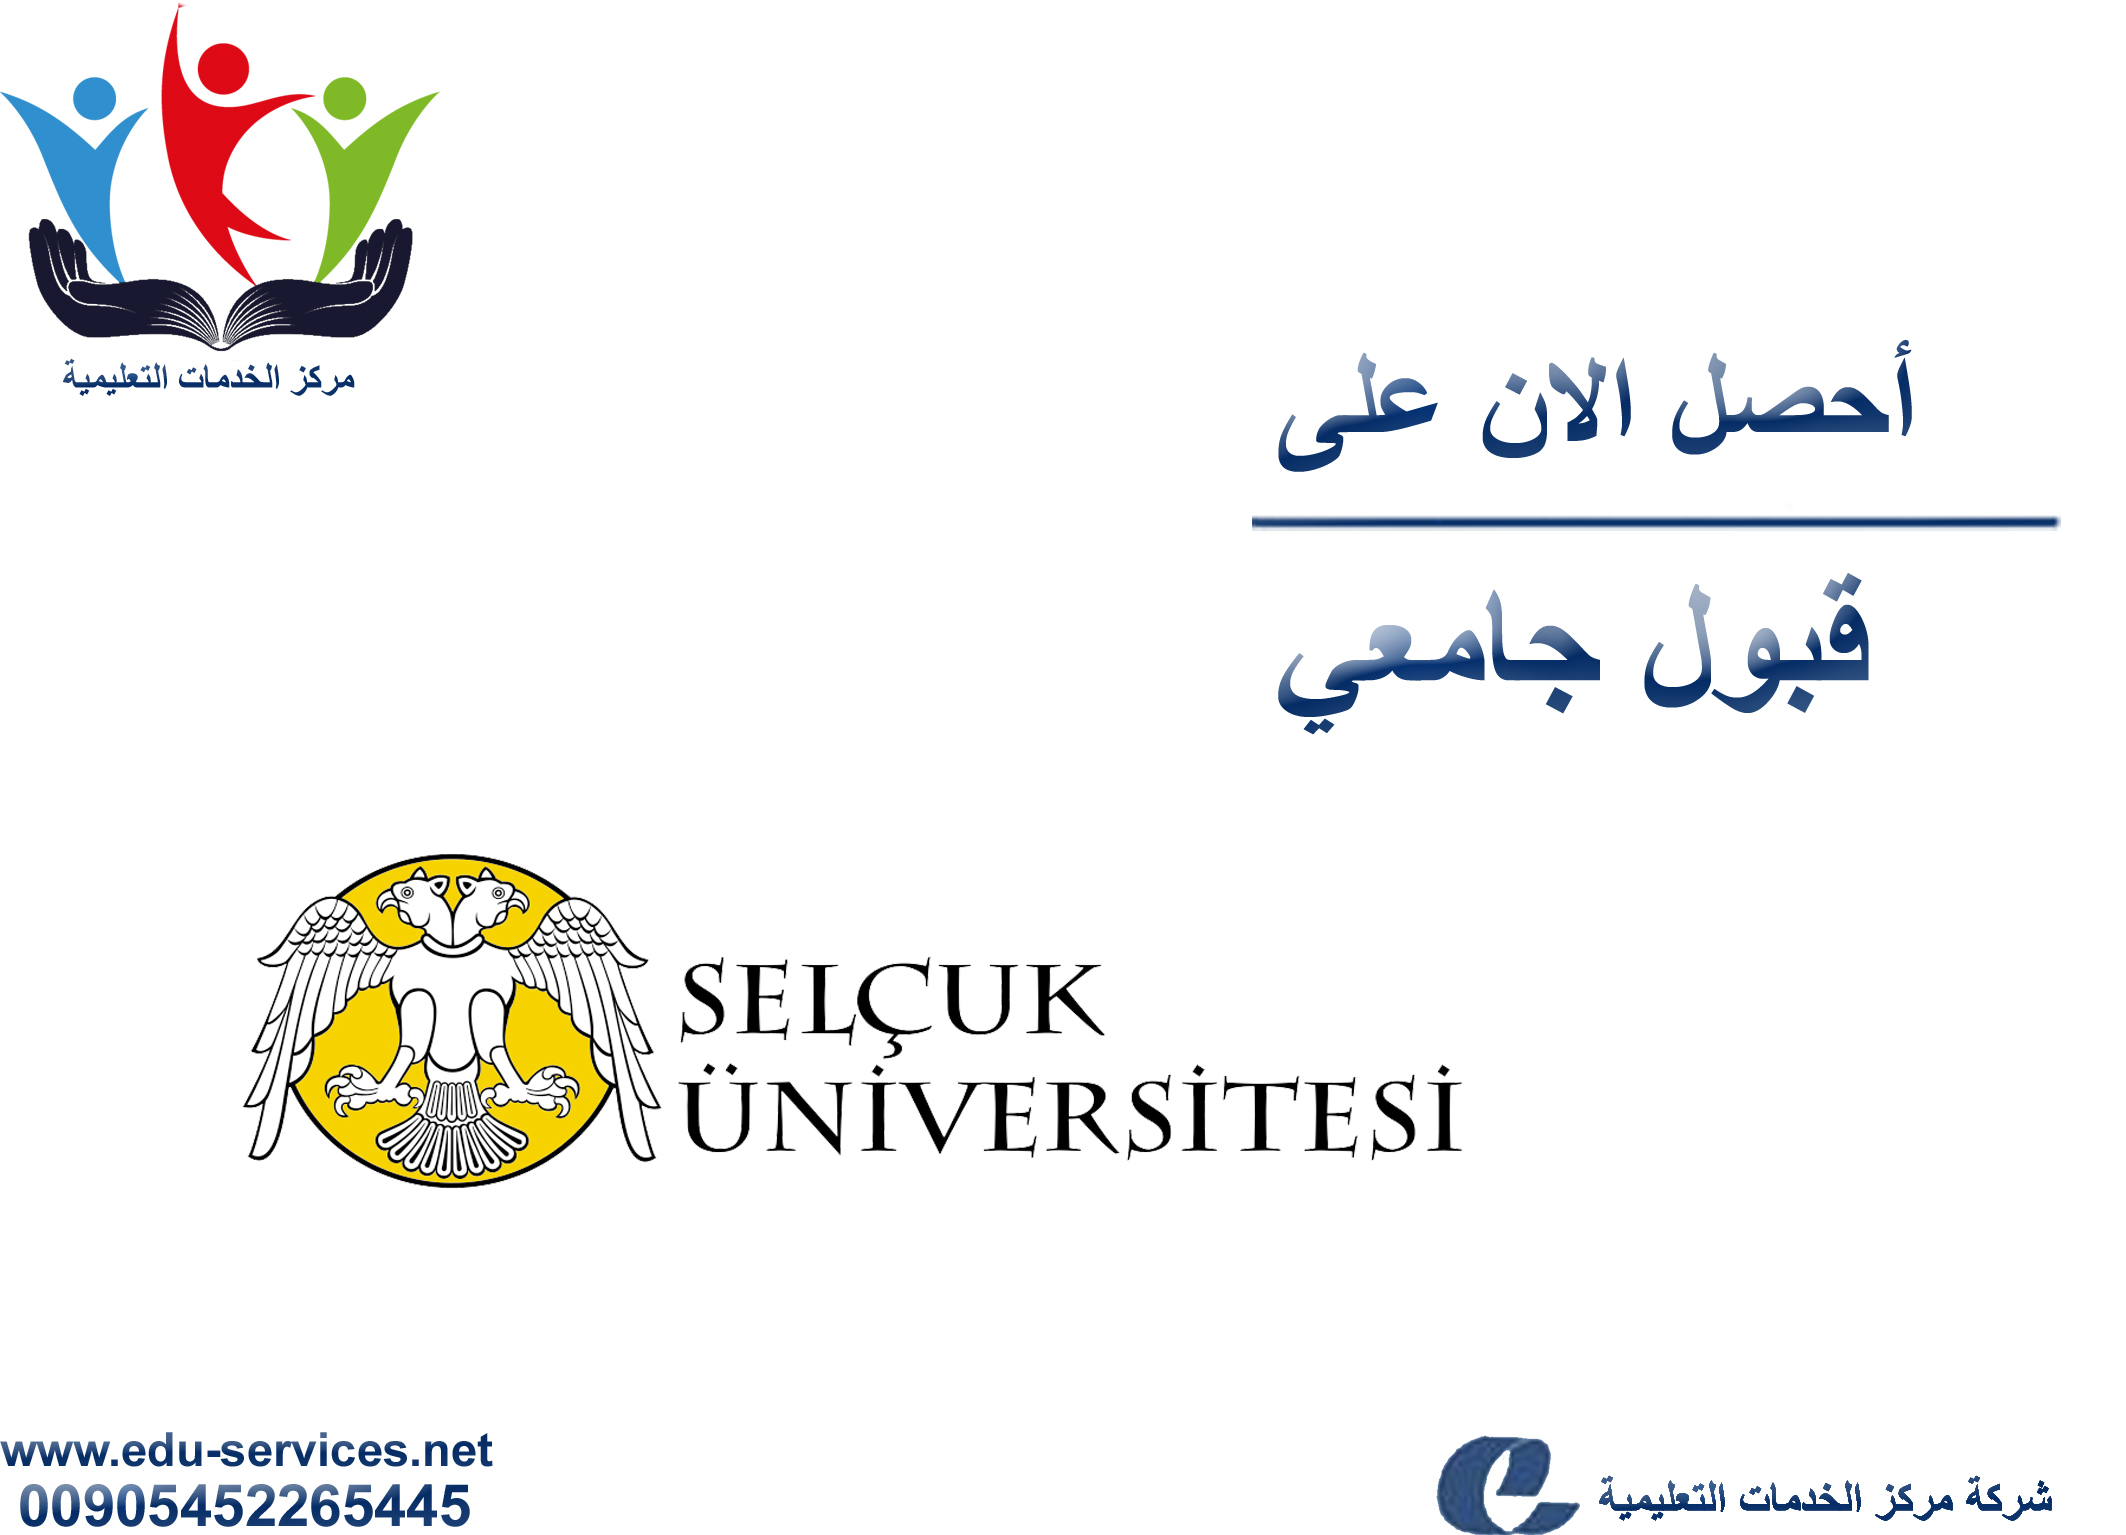 افتتاح التسجيل في جامعة سلجوق للعام 2017-2018